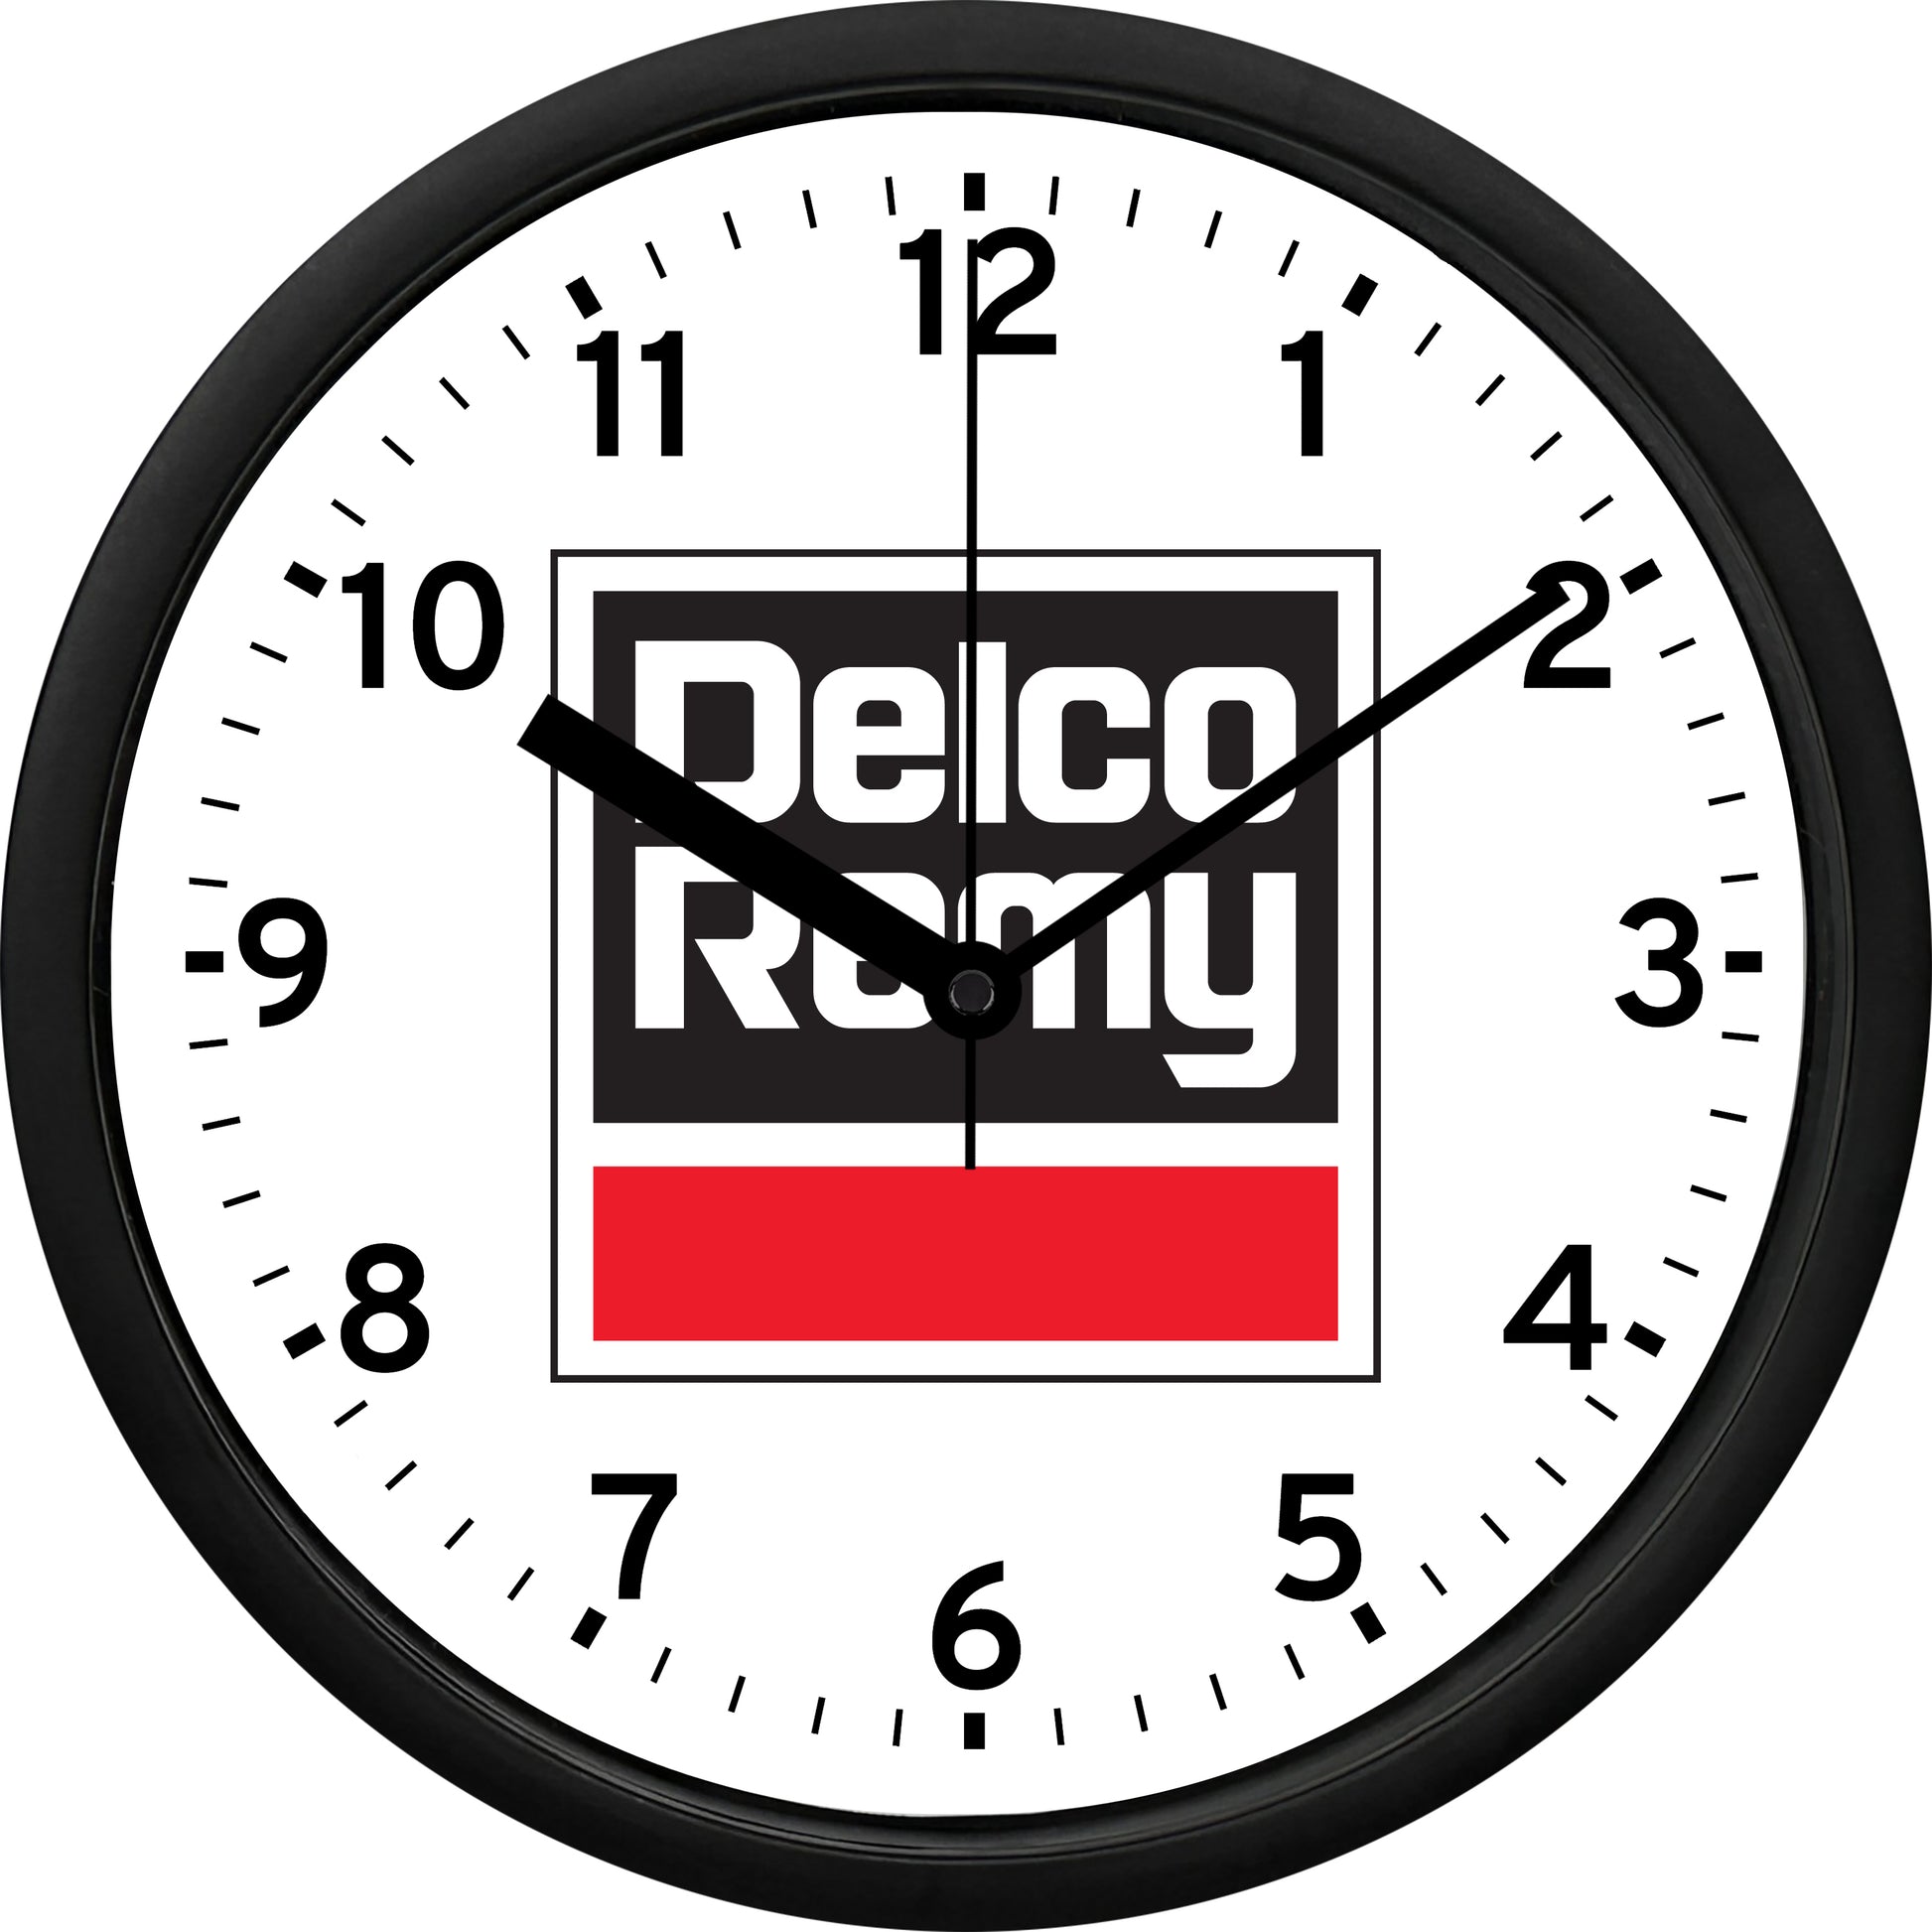 Delco Remy Auto Parts Wall Clock